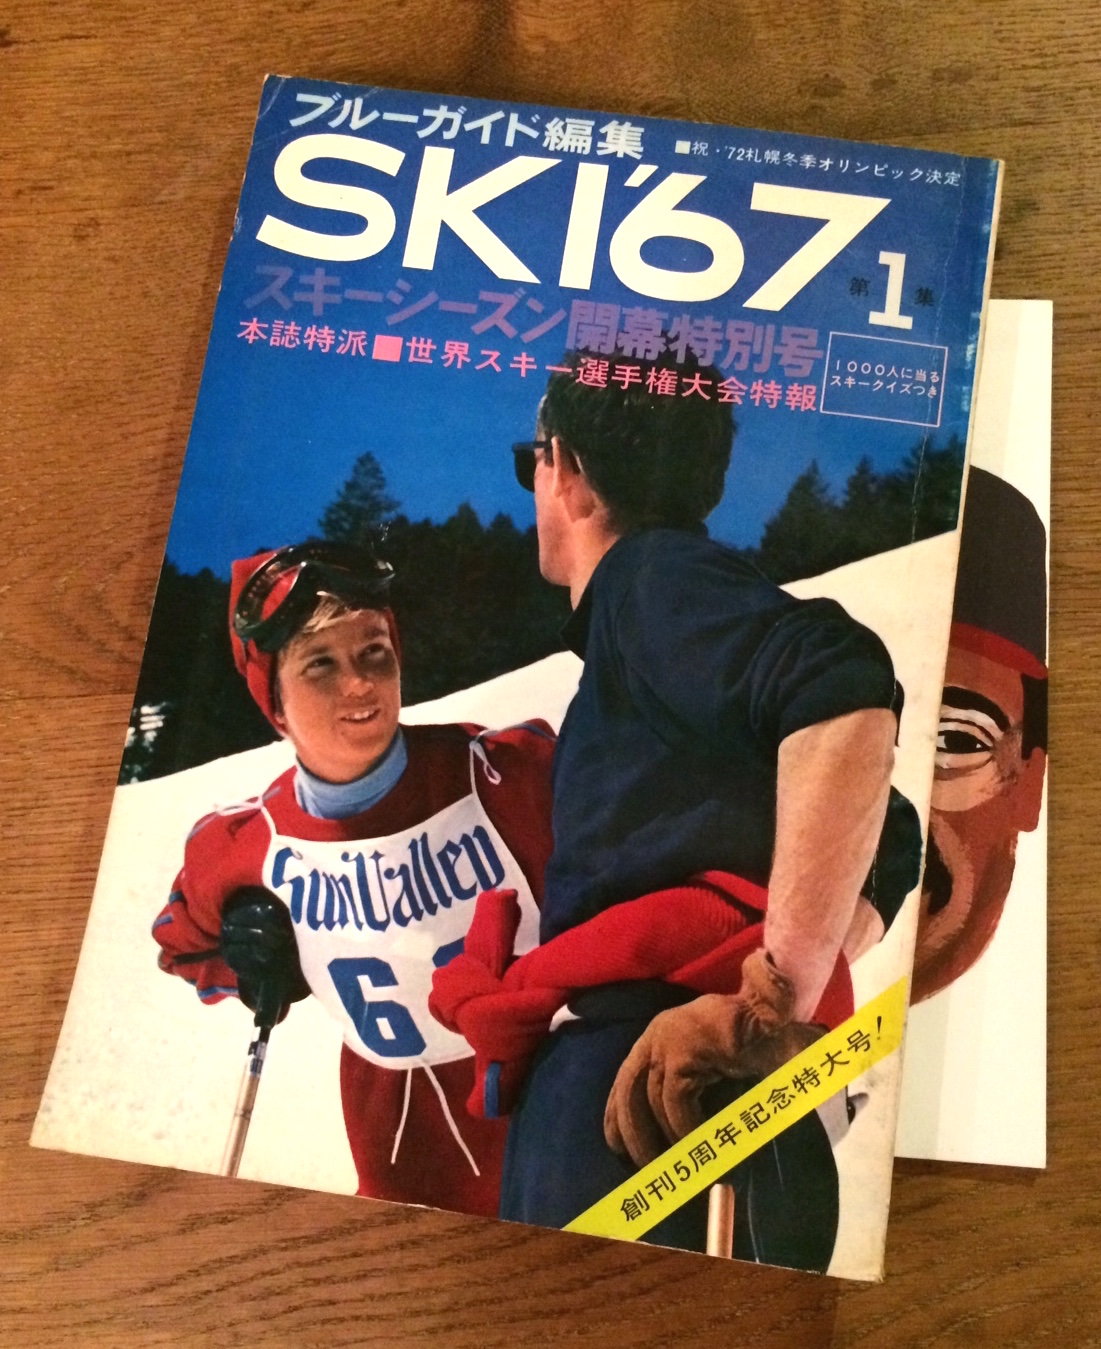 ski67.jpg